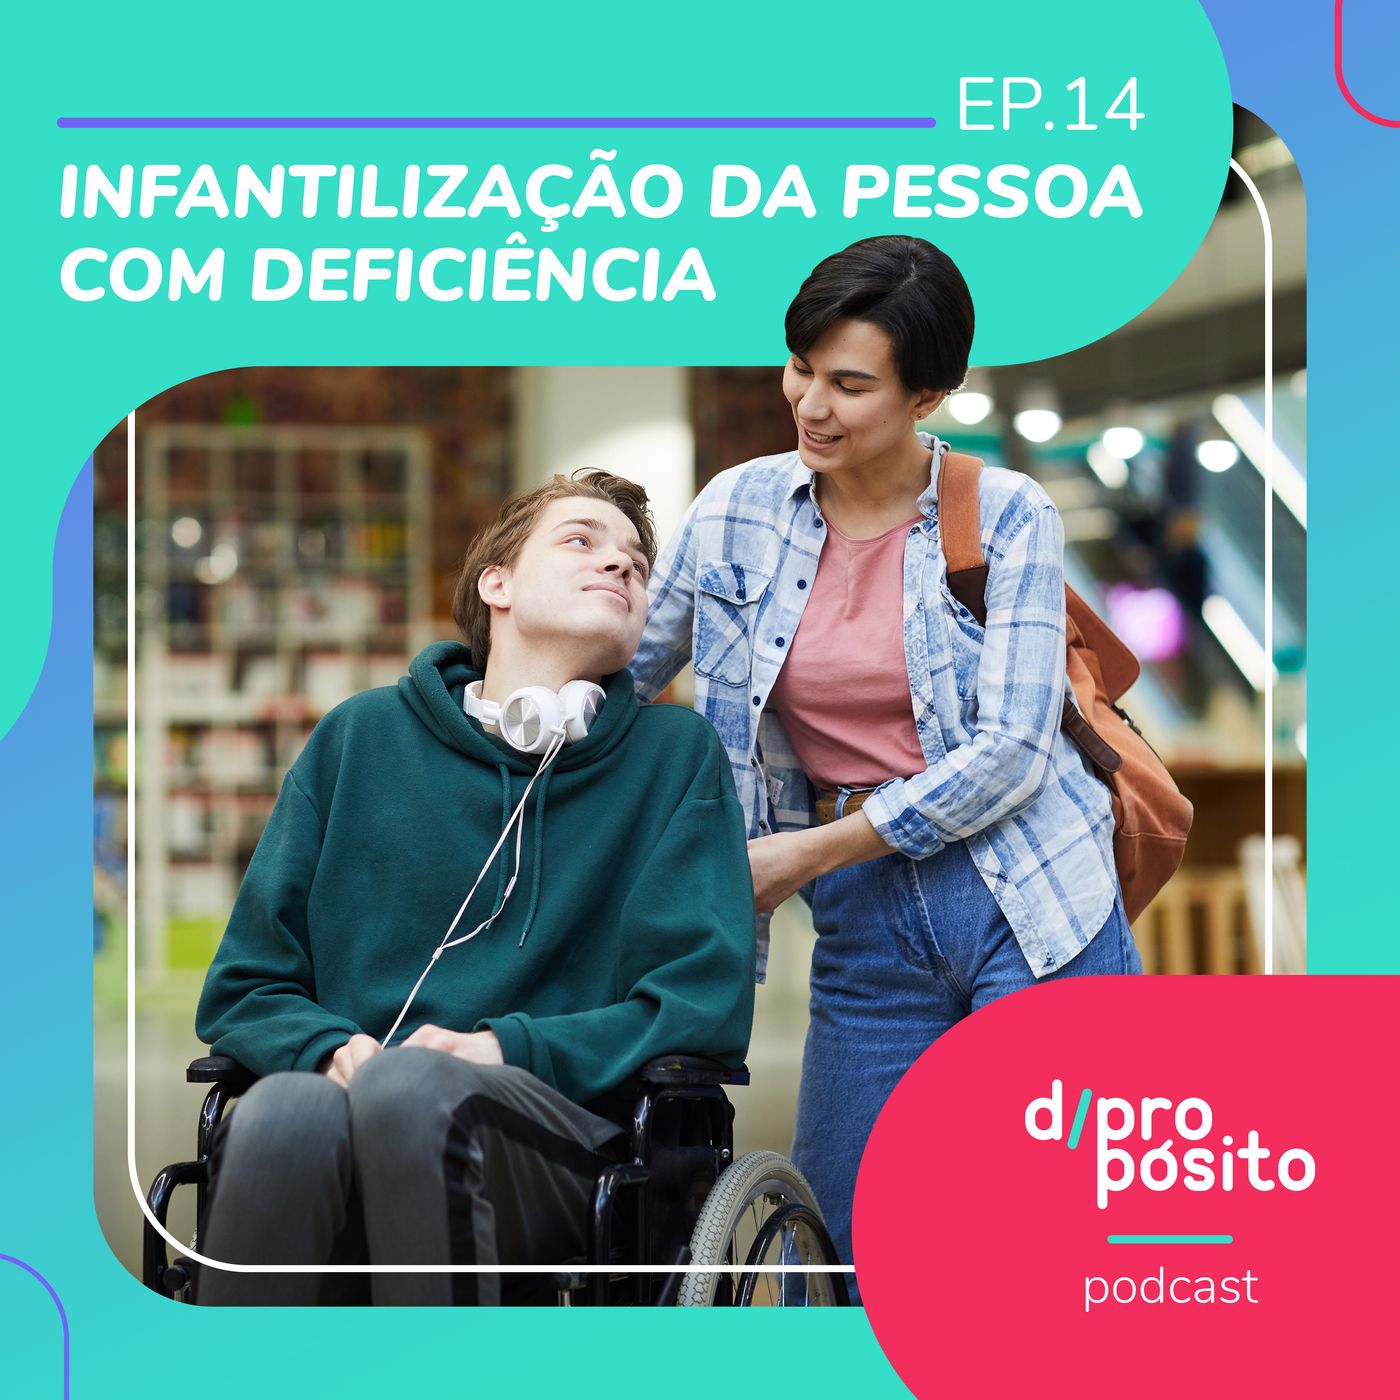 14. Infantilização da pessoa com deficiência